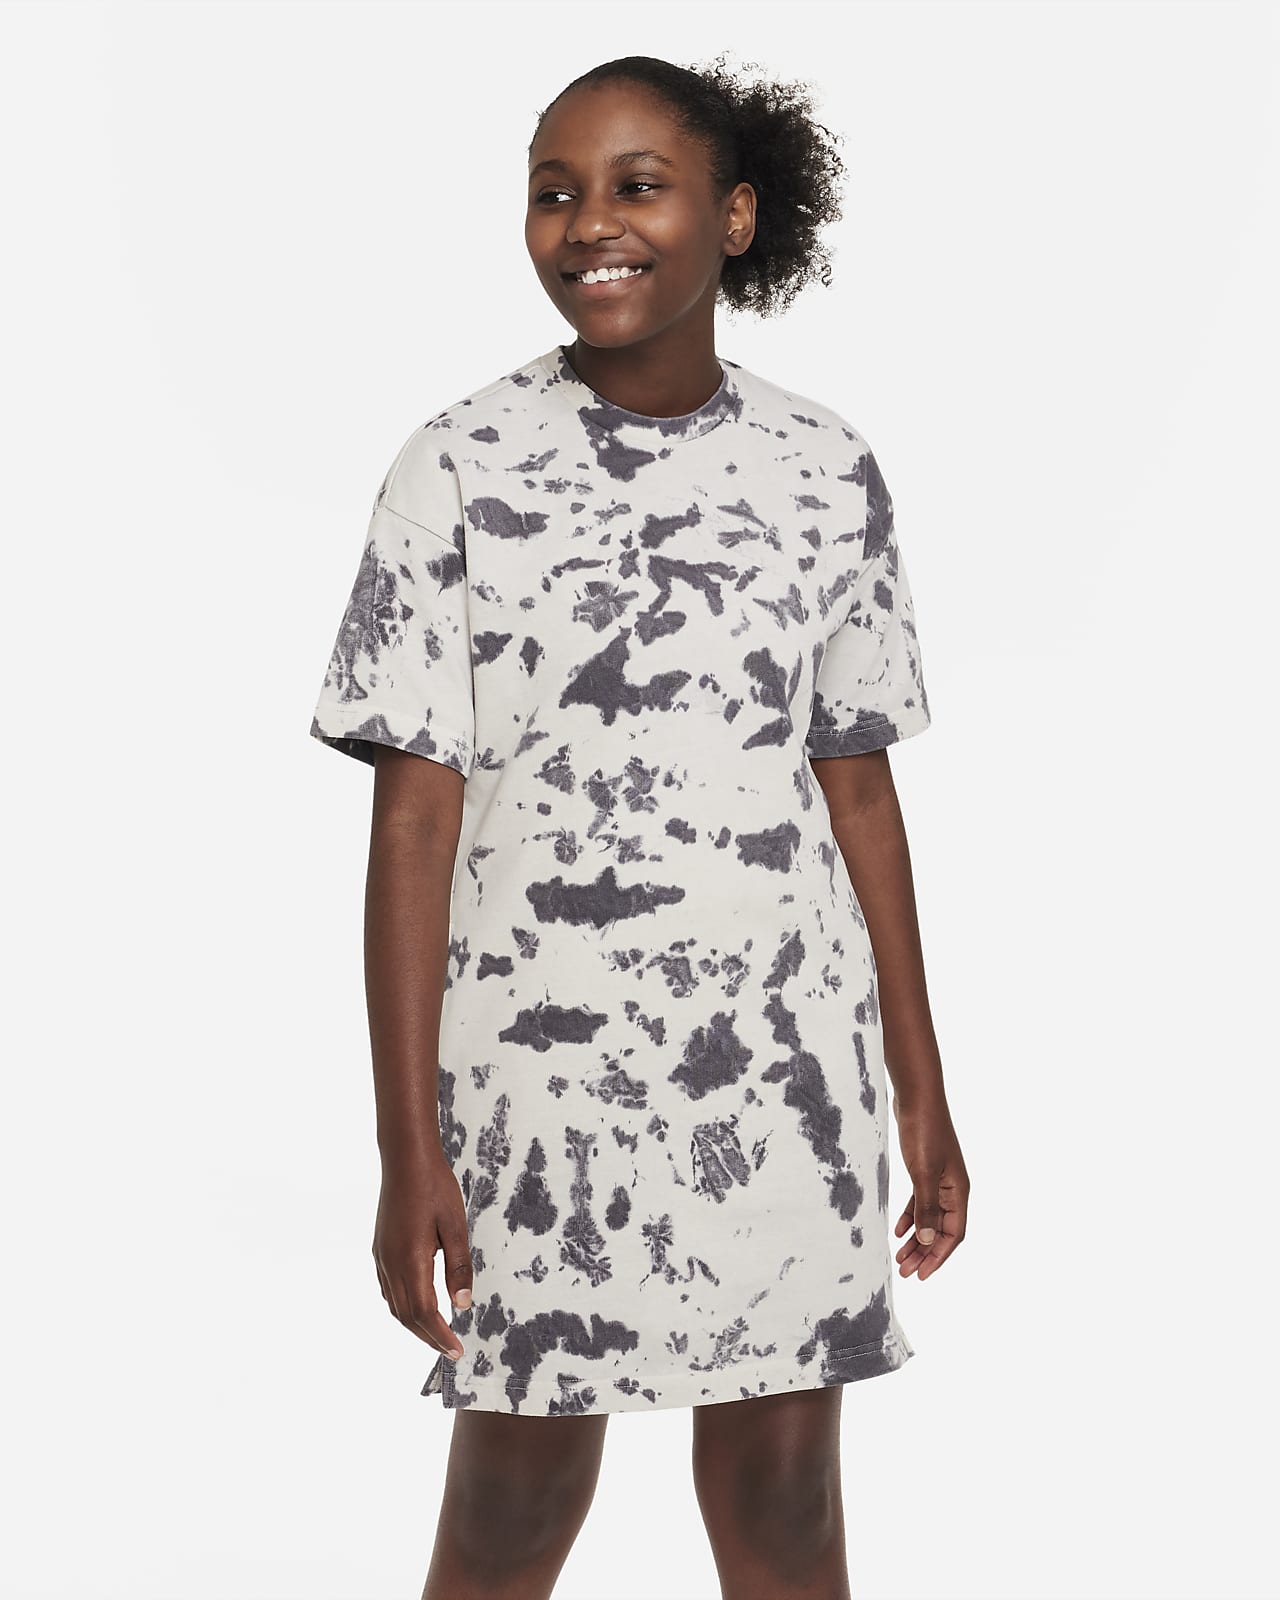 Nike Sportswear Older Kids' (Girls') Dress